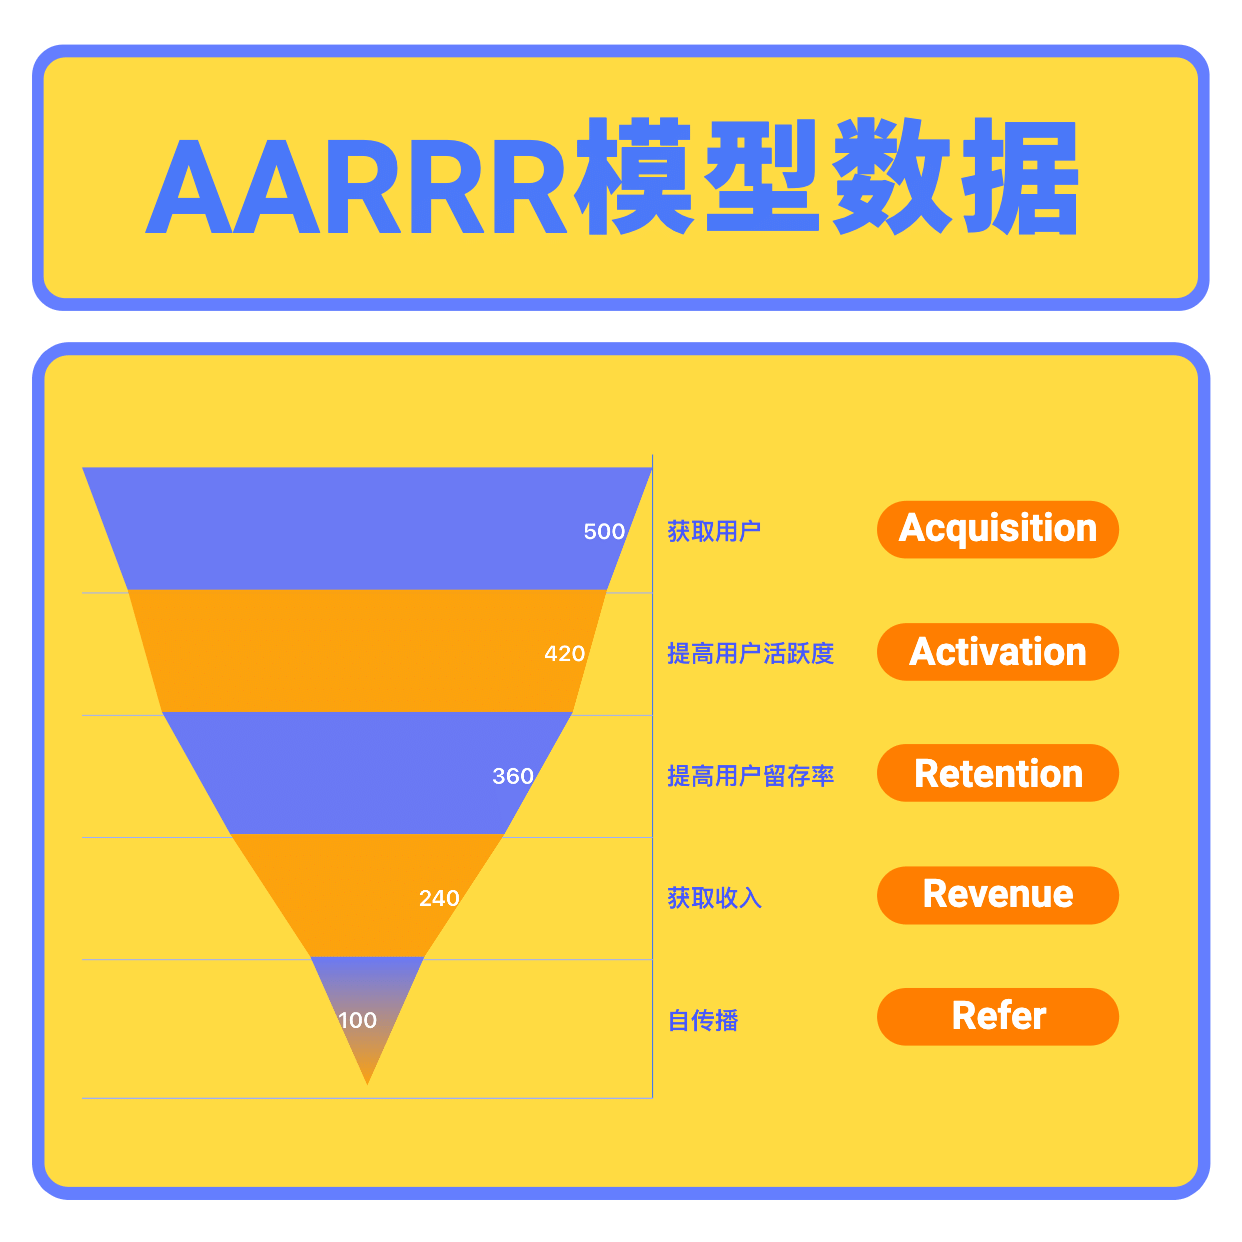 AARRR模型数据图表公众号方形海报预览效果